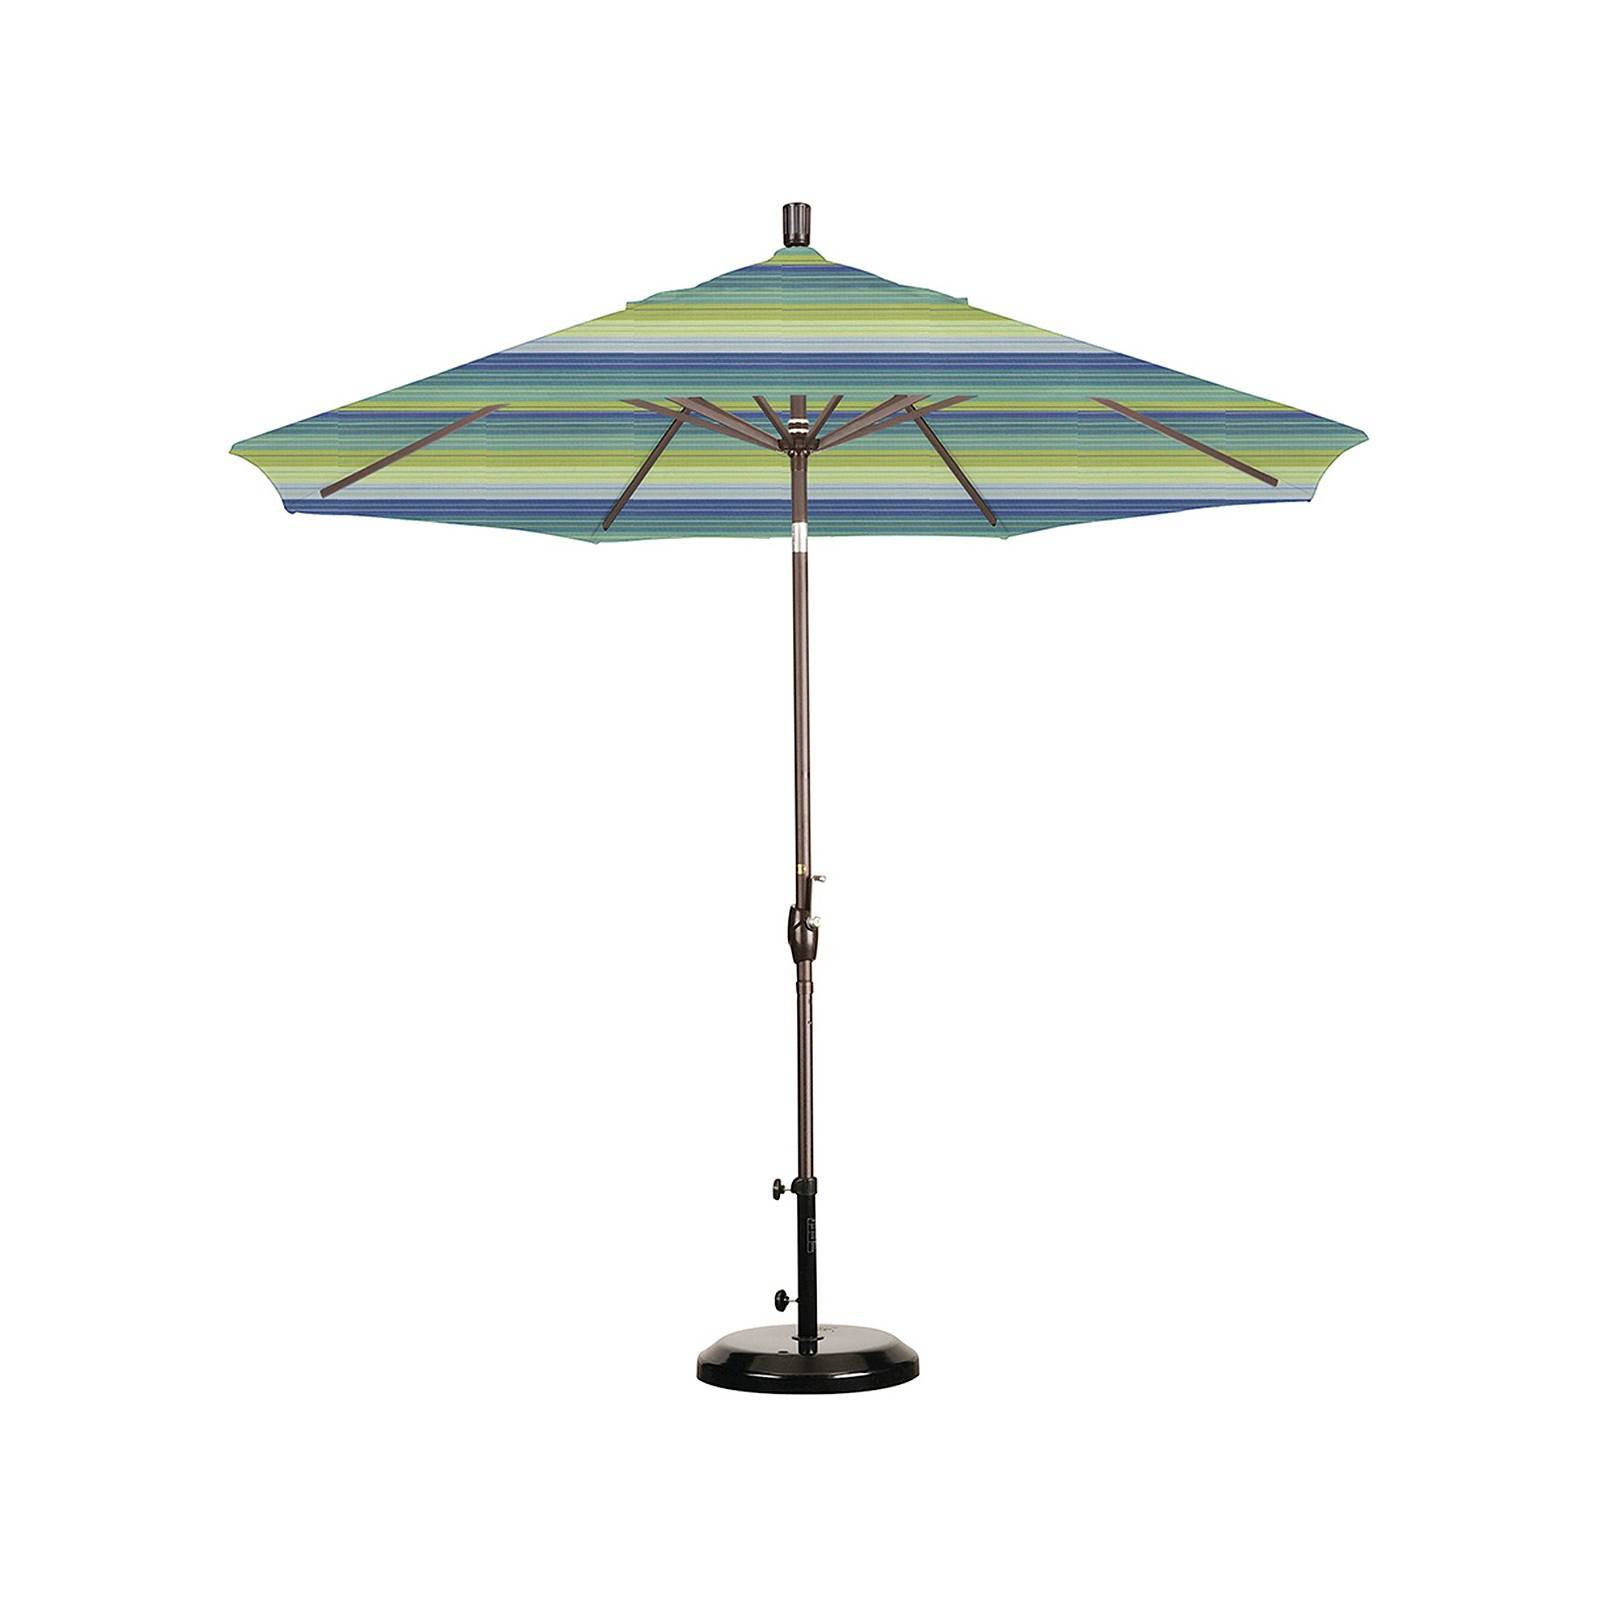 Best ideas about 9' Patio Umbrella
. Save or Pin 9 Aluminum Push Tilt Patio Umbrella California Umbrella Now.